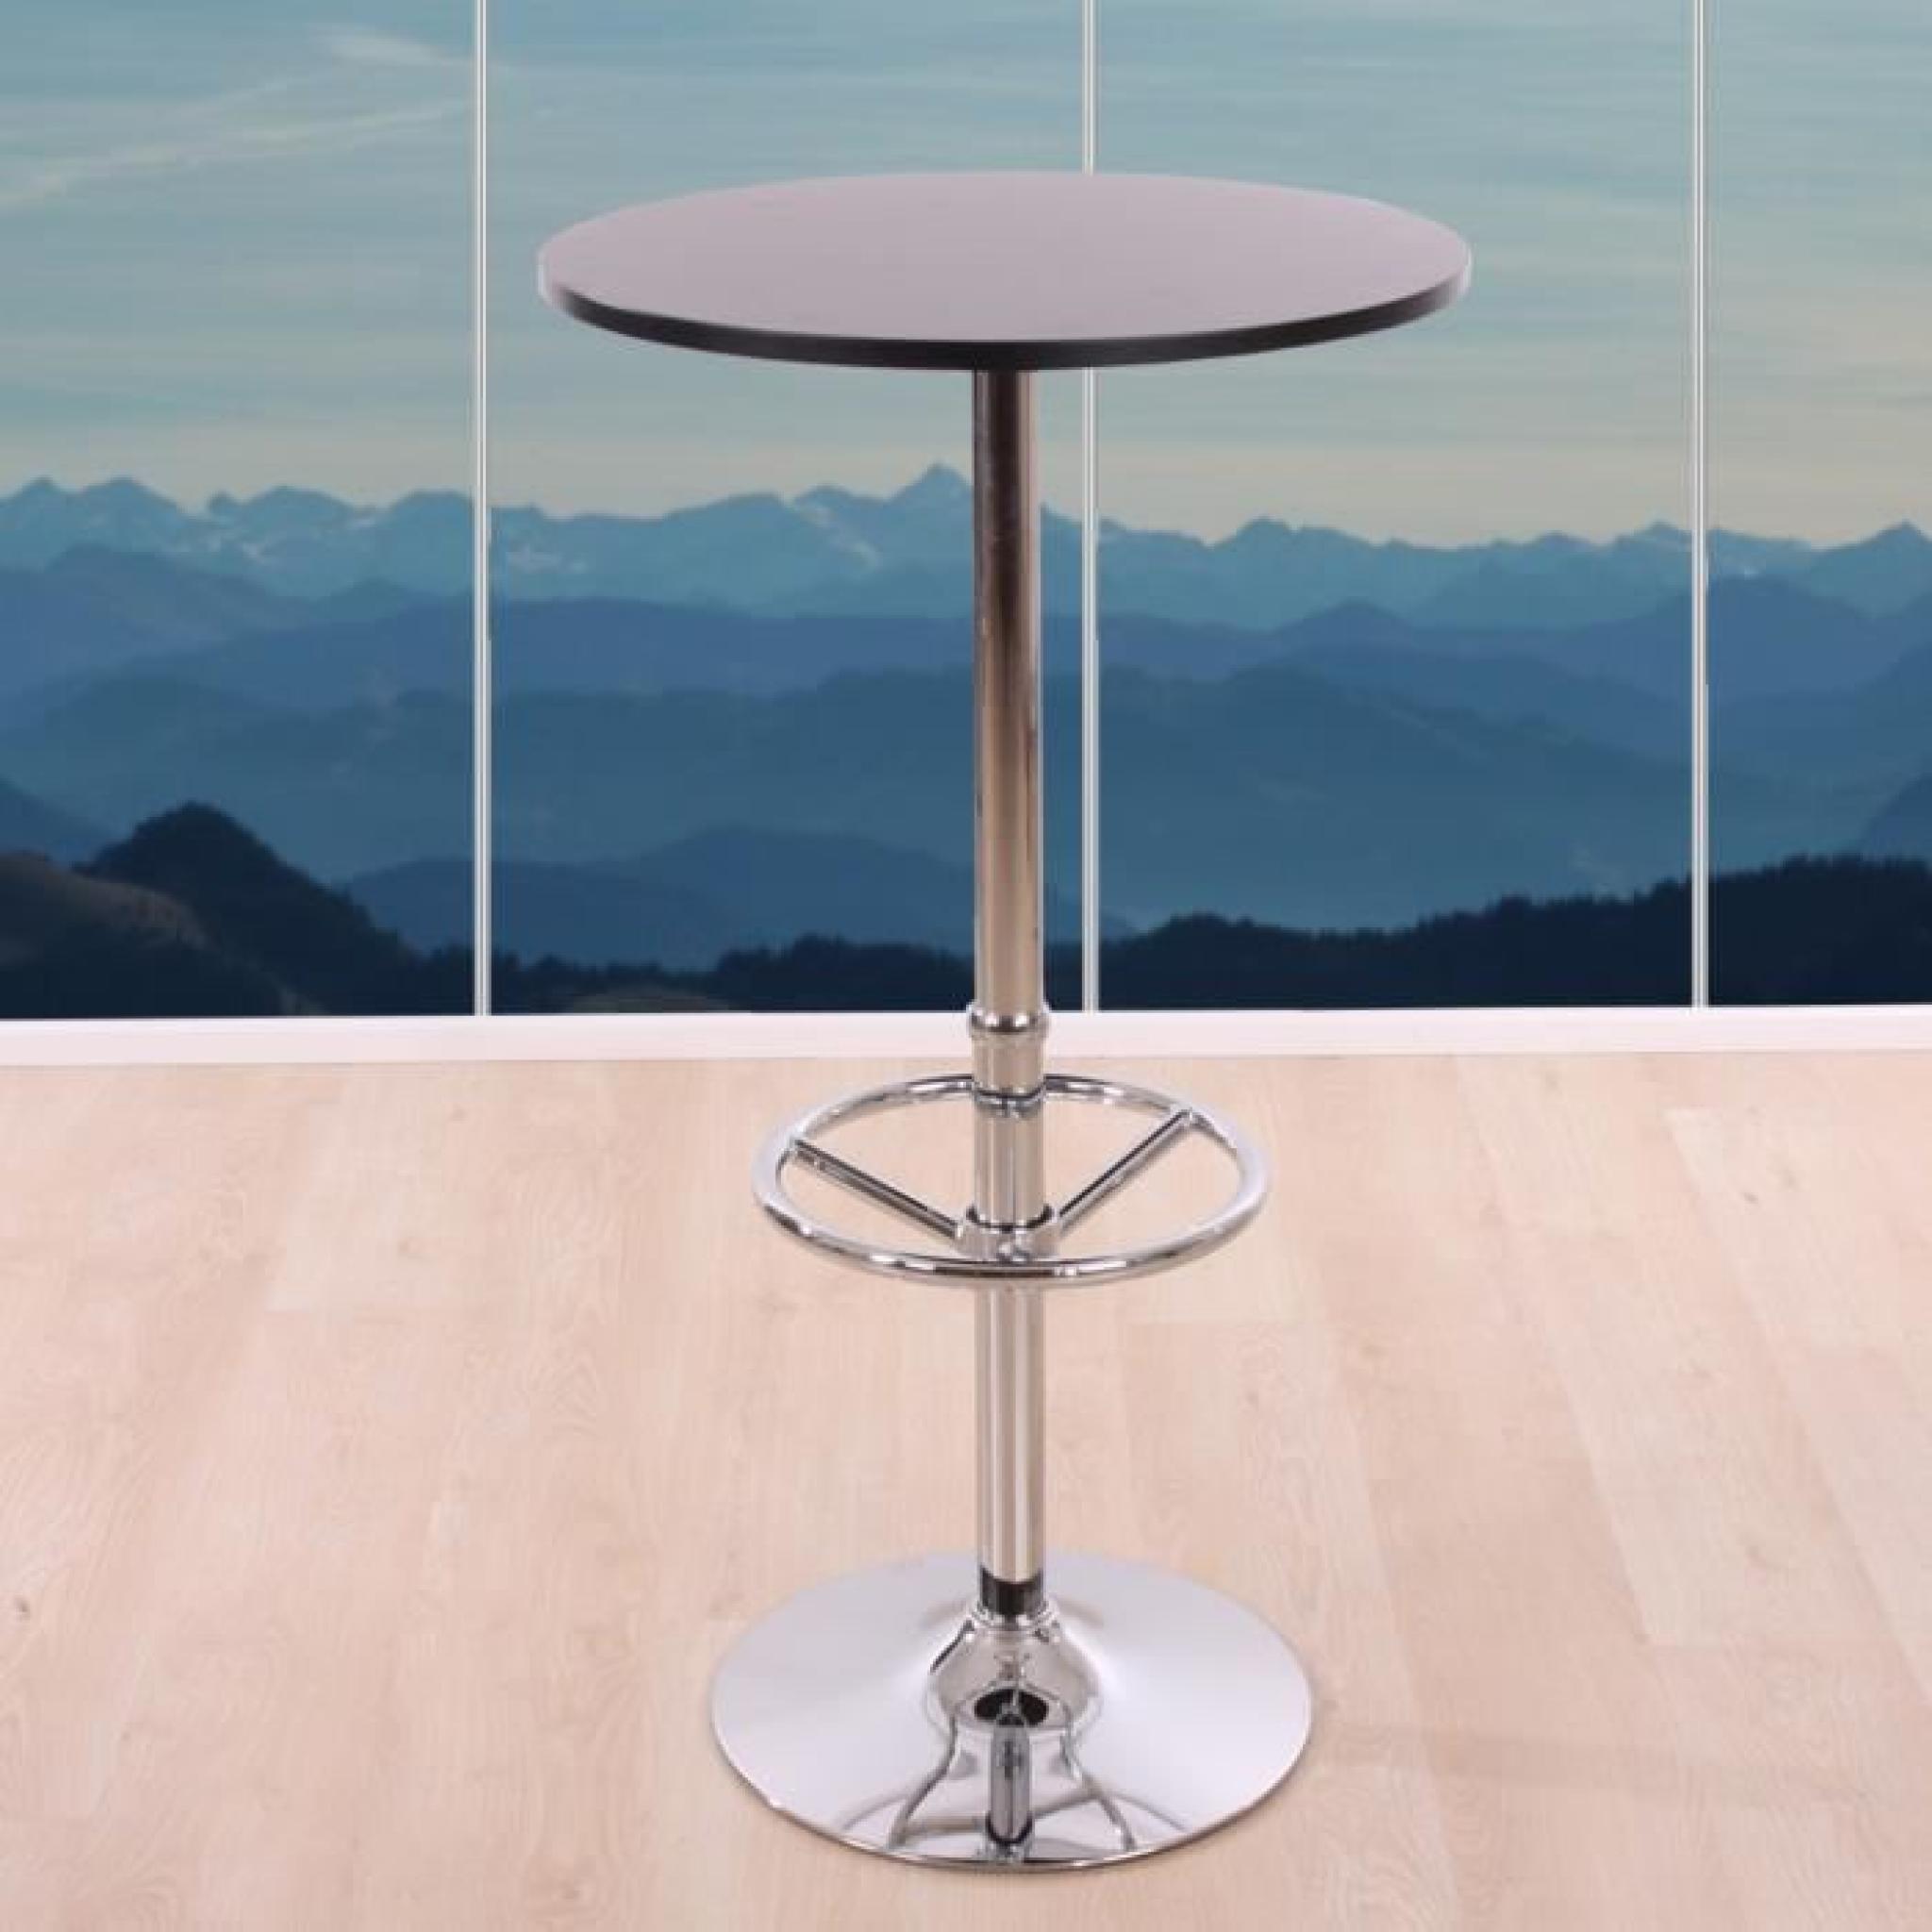 Table de bar / table haute Bari, ronde, avec repose-pied,109x60x60cm, noir. pas cher